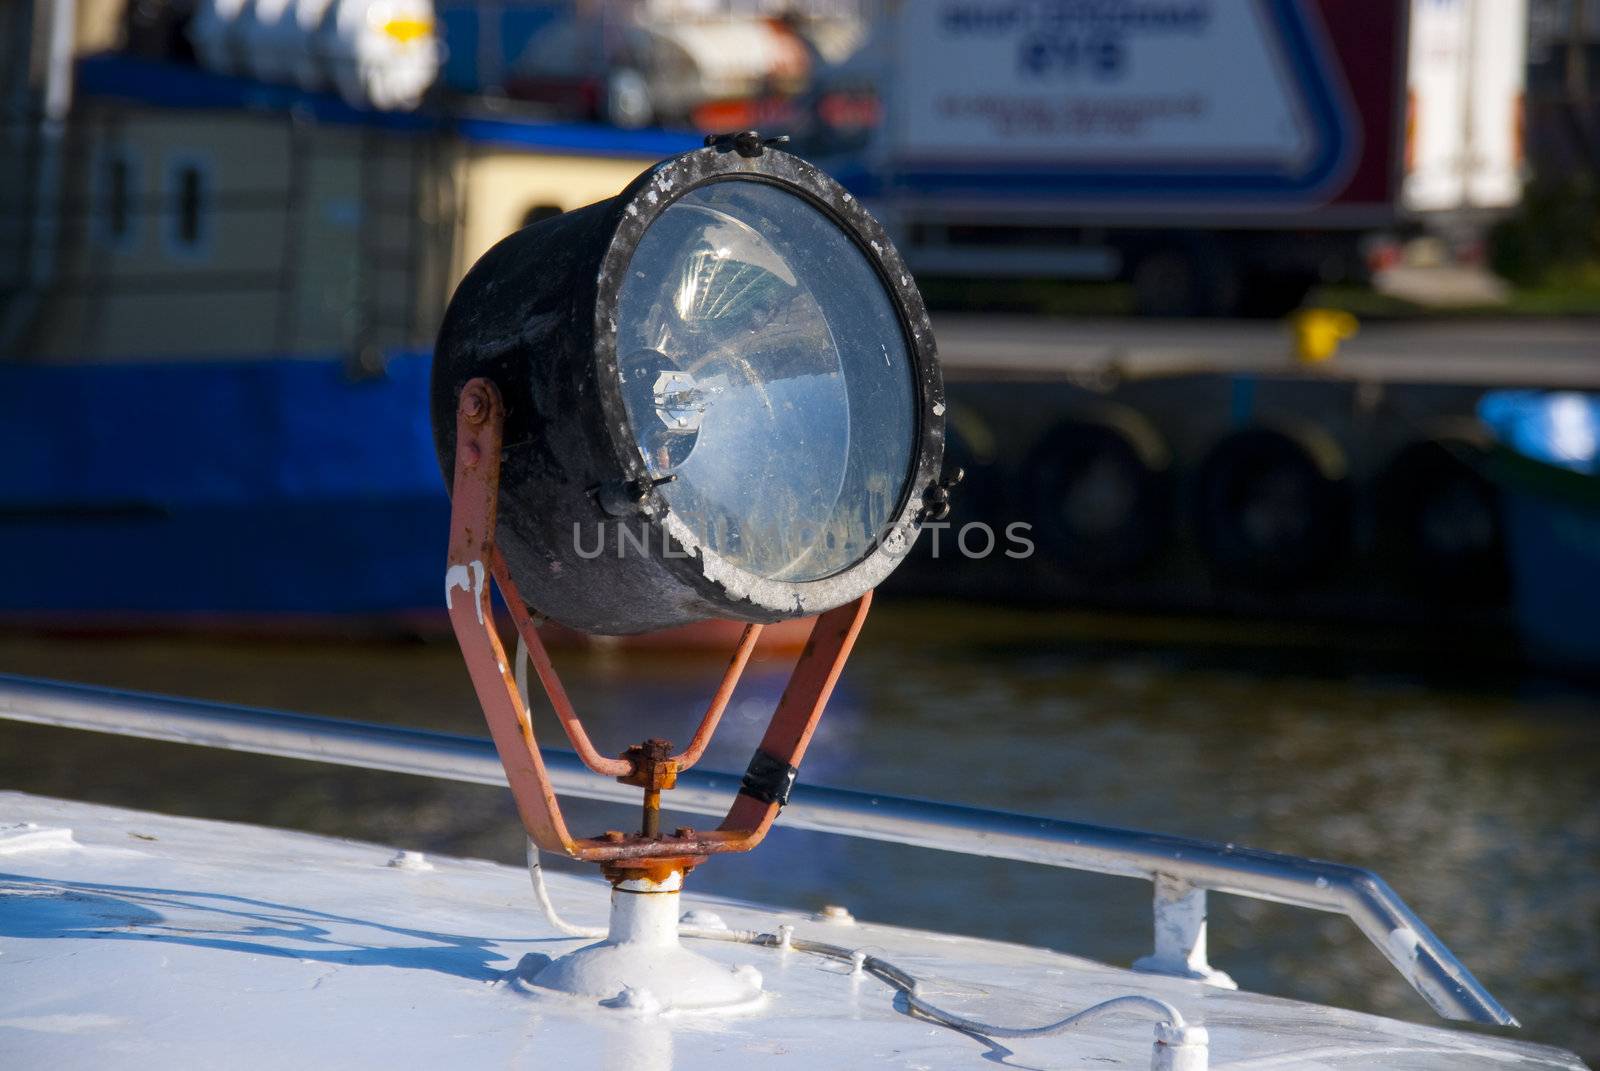 Searchlight on the boat by wojciechkozlowski